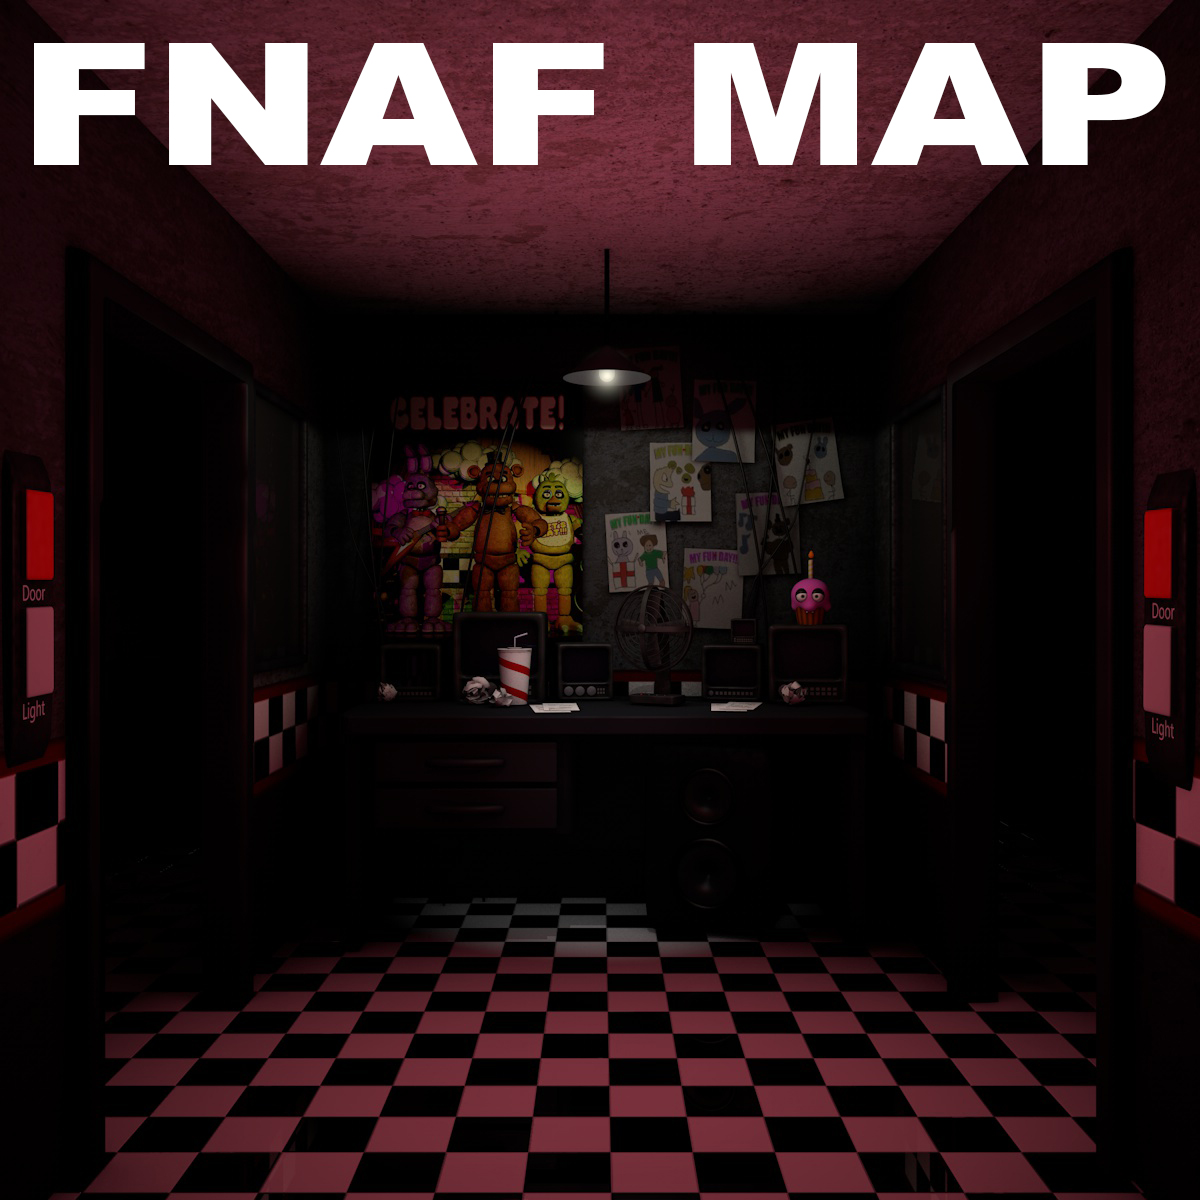 map of fnaf 1